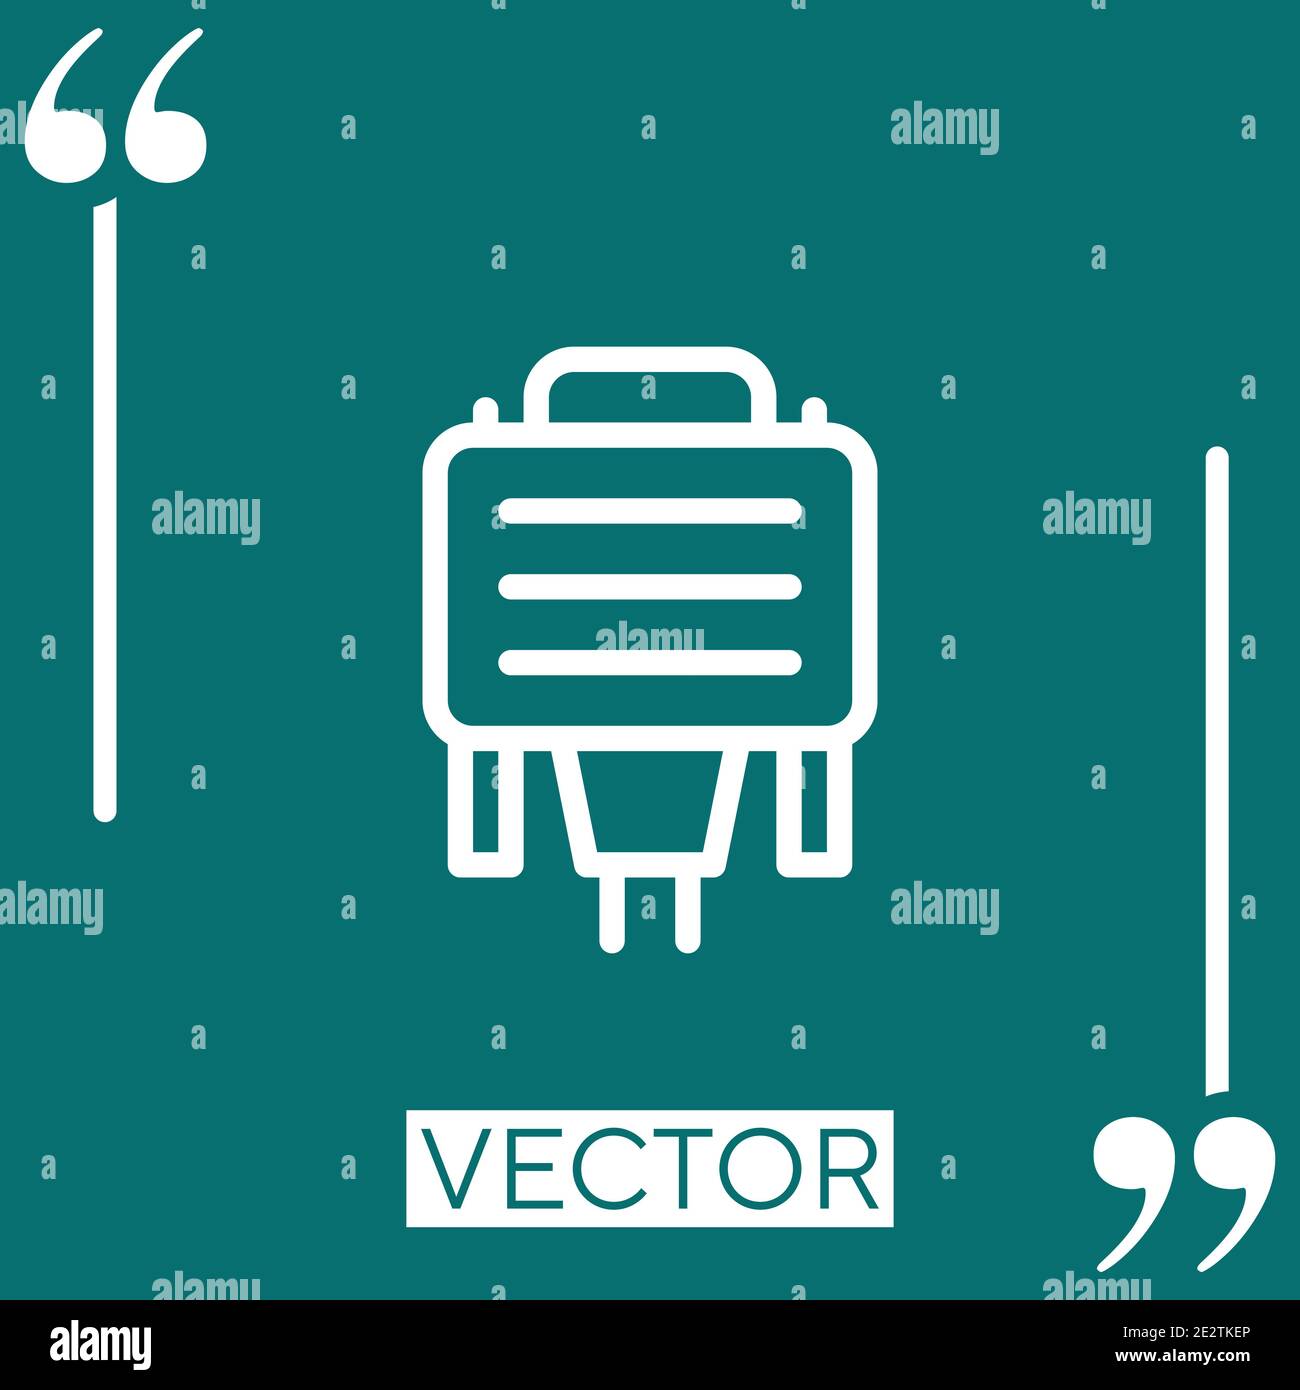 vga vector icon Linear icon. Editable stroke line Stock Vector